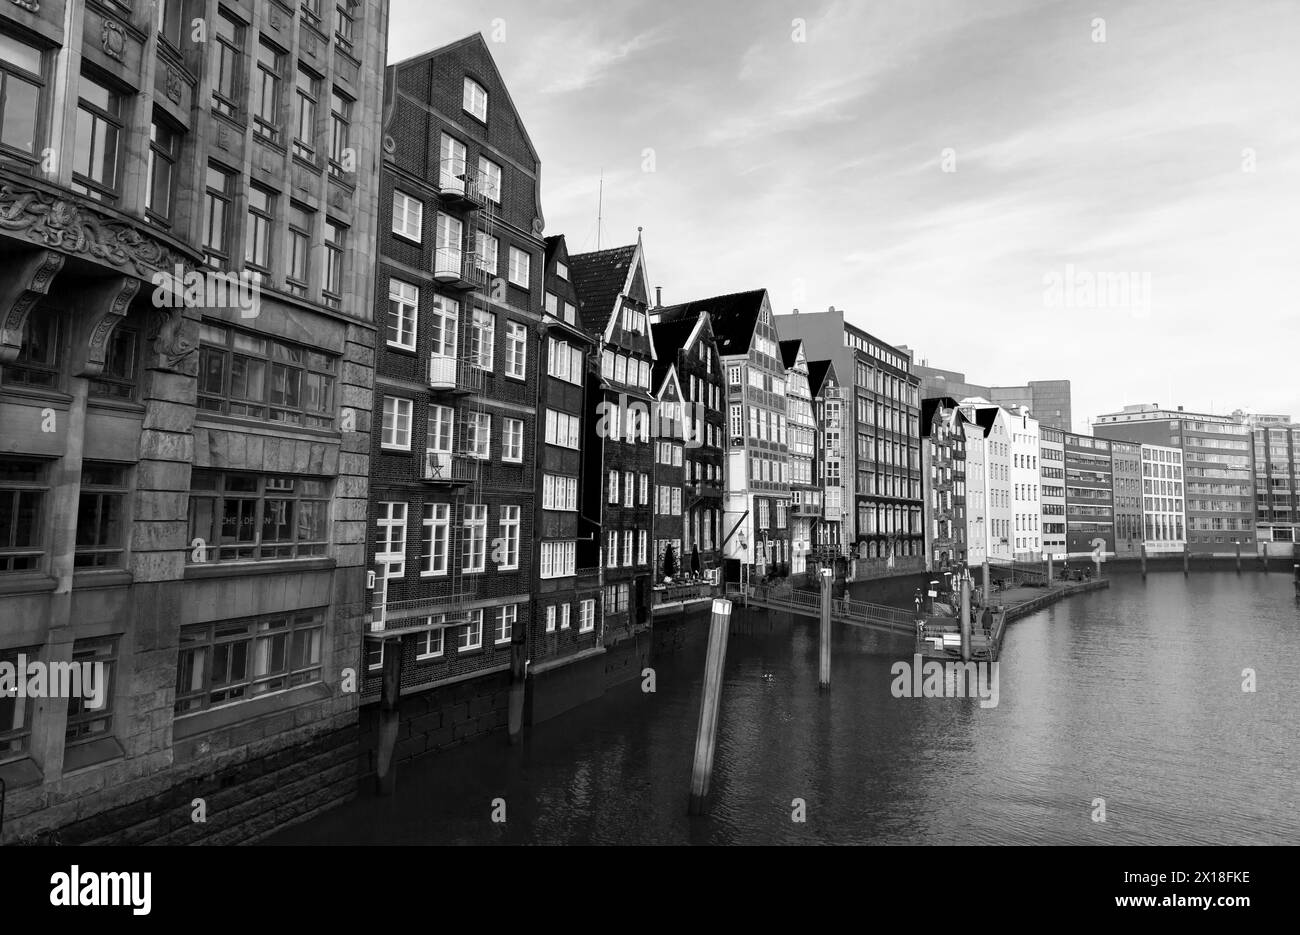 Hambourg, Allemagne - 30 novembre 2018 : vieille ville de Hambourg vue côtière avec façades de maisons vivantes du quartier Altstadt, photo noir et blanc Banque D'Images